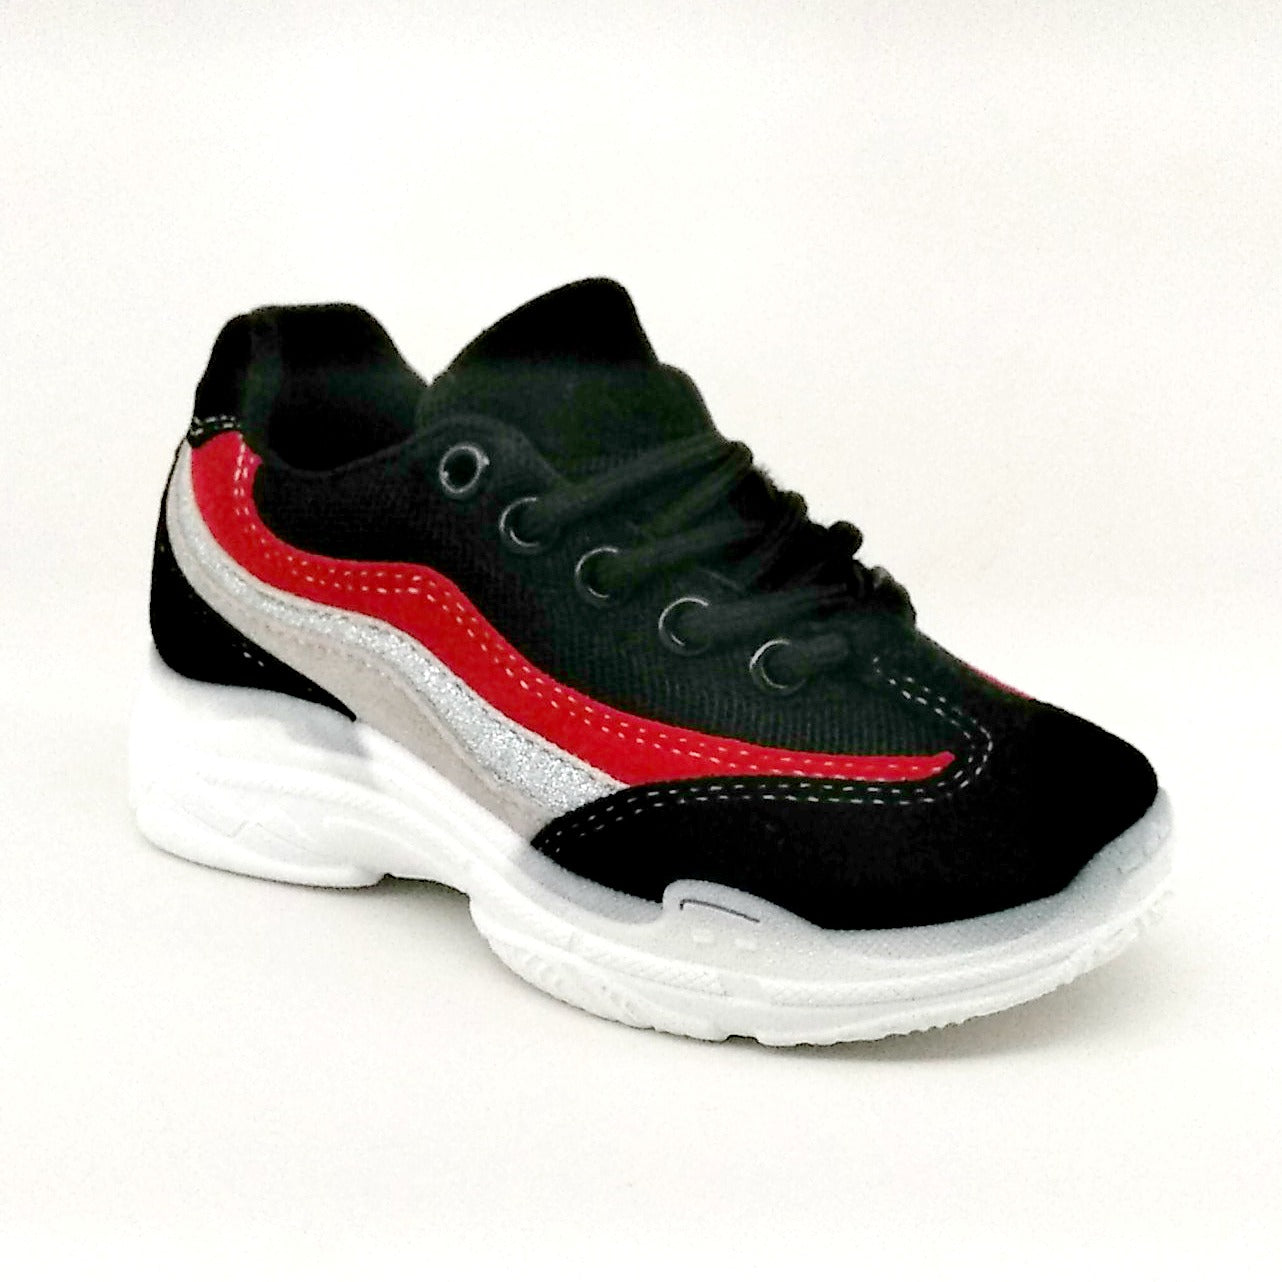 Unisex Children Black Sneaker